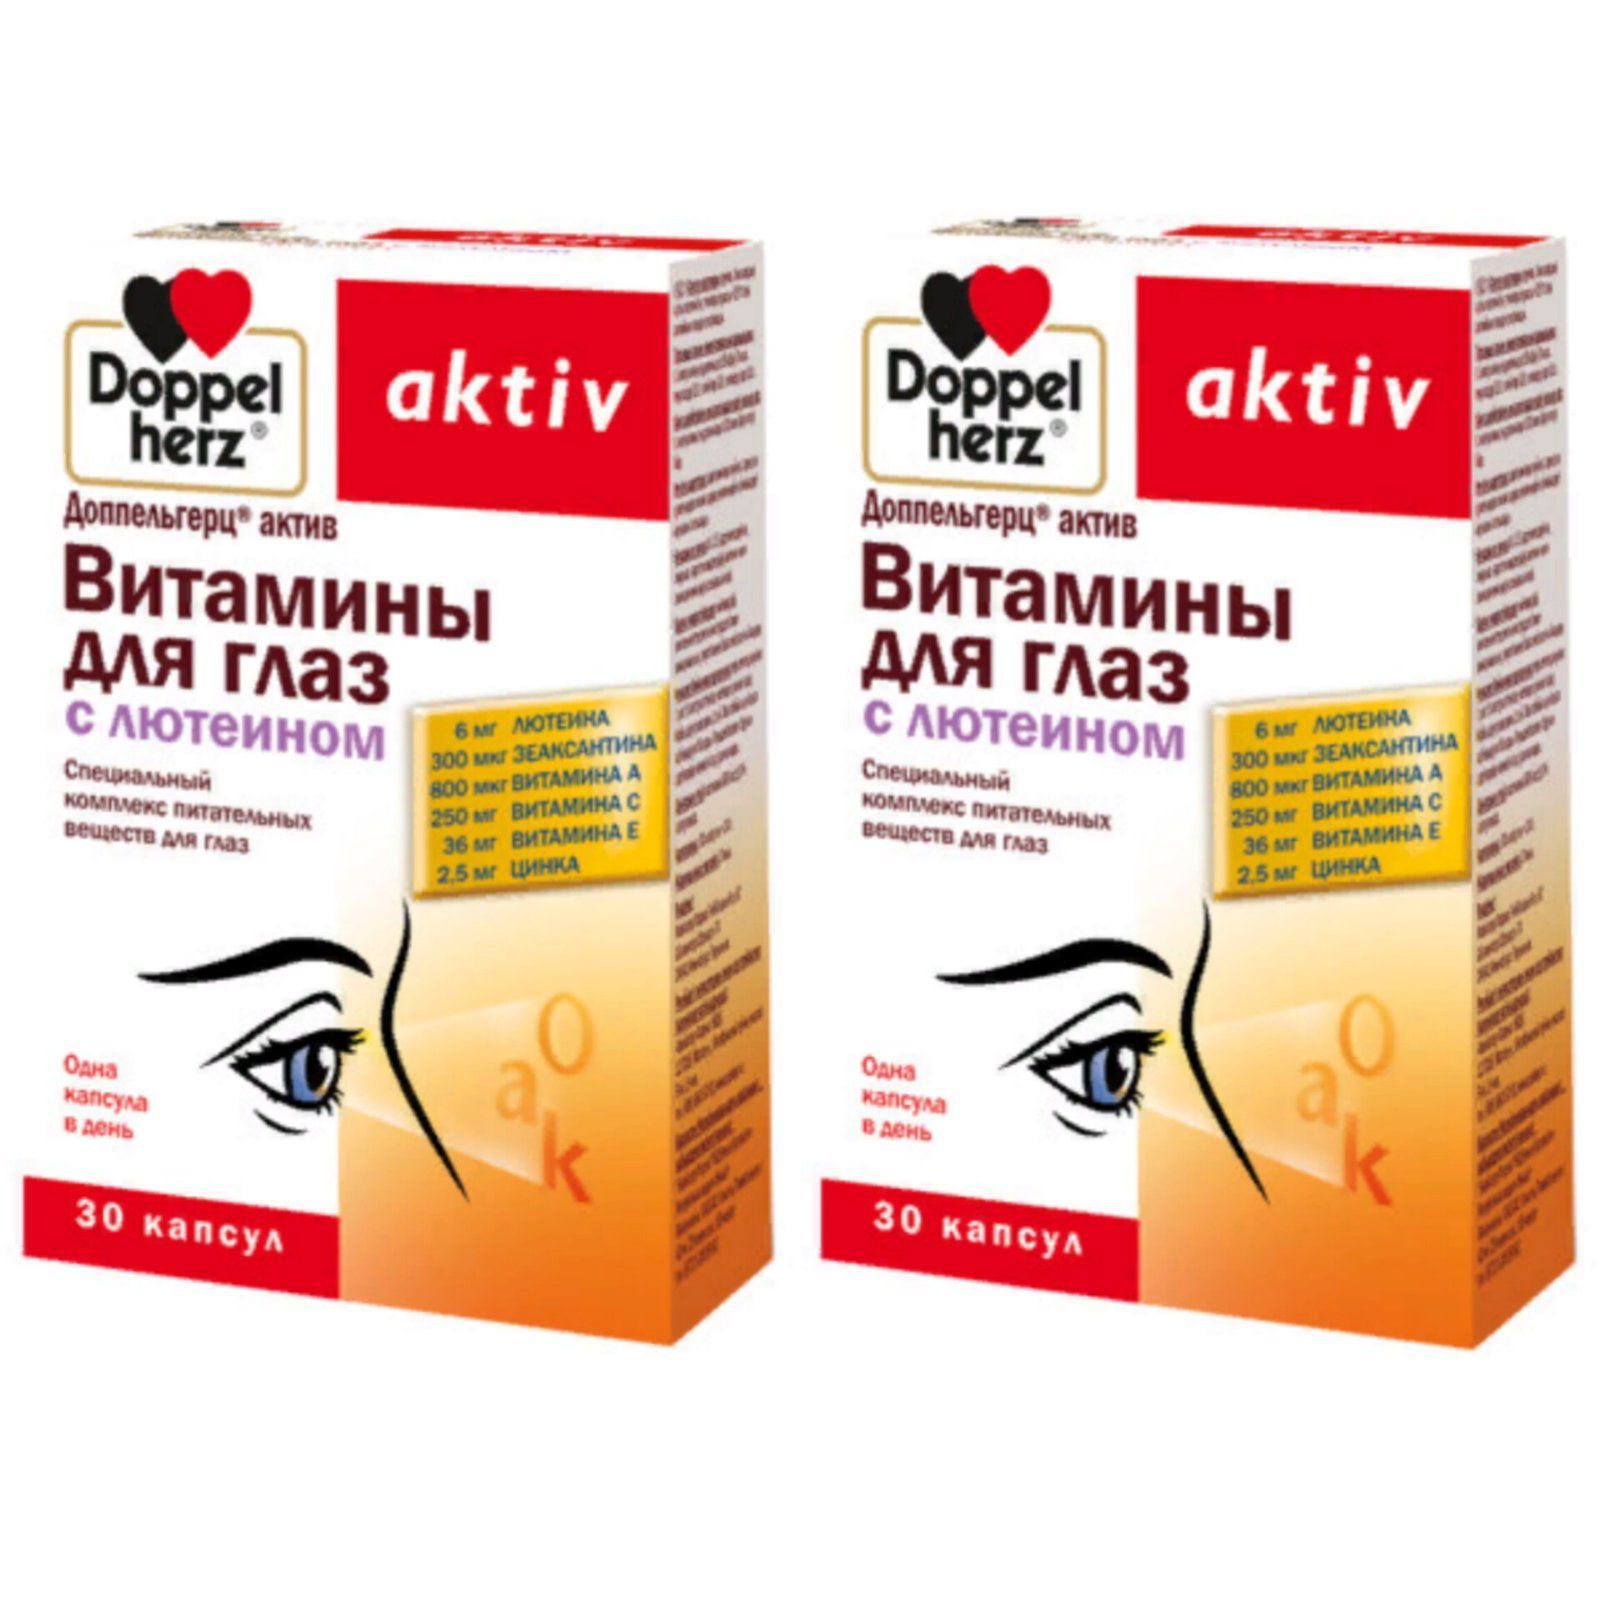 Доппельгерц Актив витамины для глаз с лютеином. Доппельгерц с лютеином детские. Витамины Актив. Доппельгерц актив витамин е